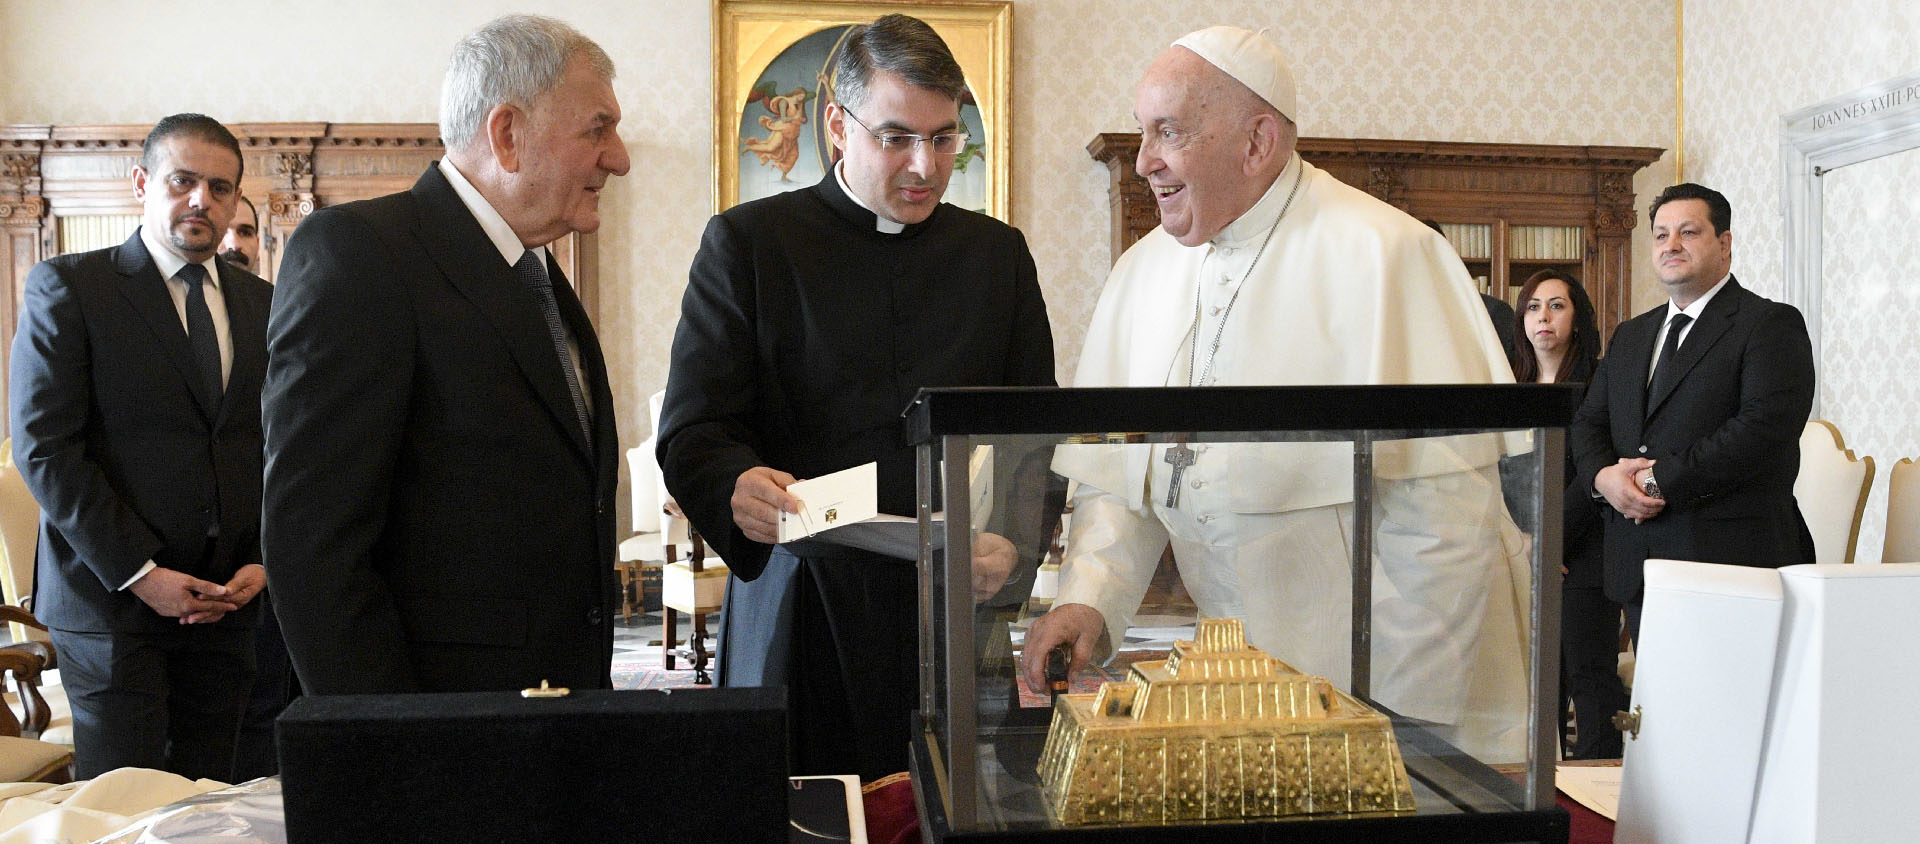 Le président irakien a offert au pape une représentation en or massif de la grande ziggourat d’Ur | © Vatican Media